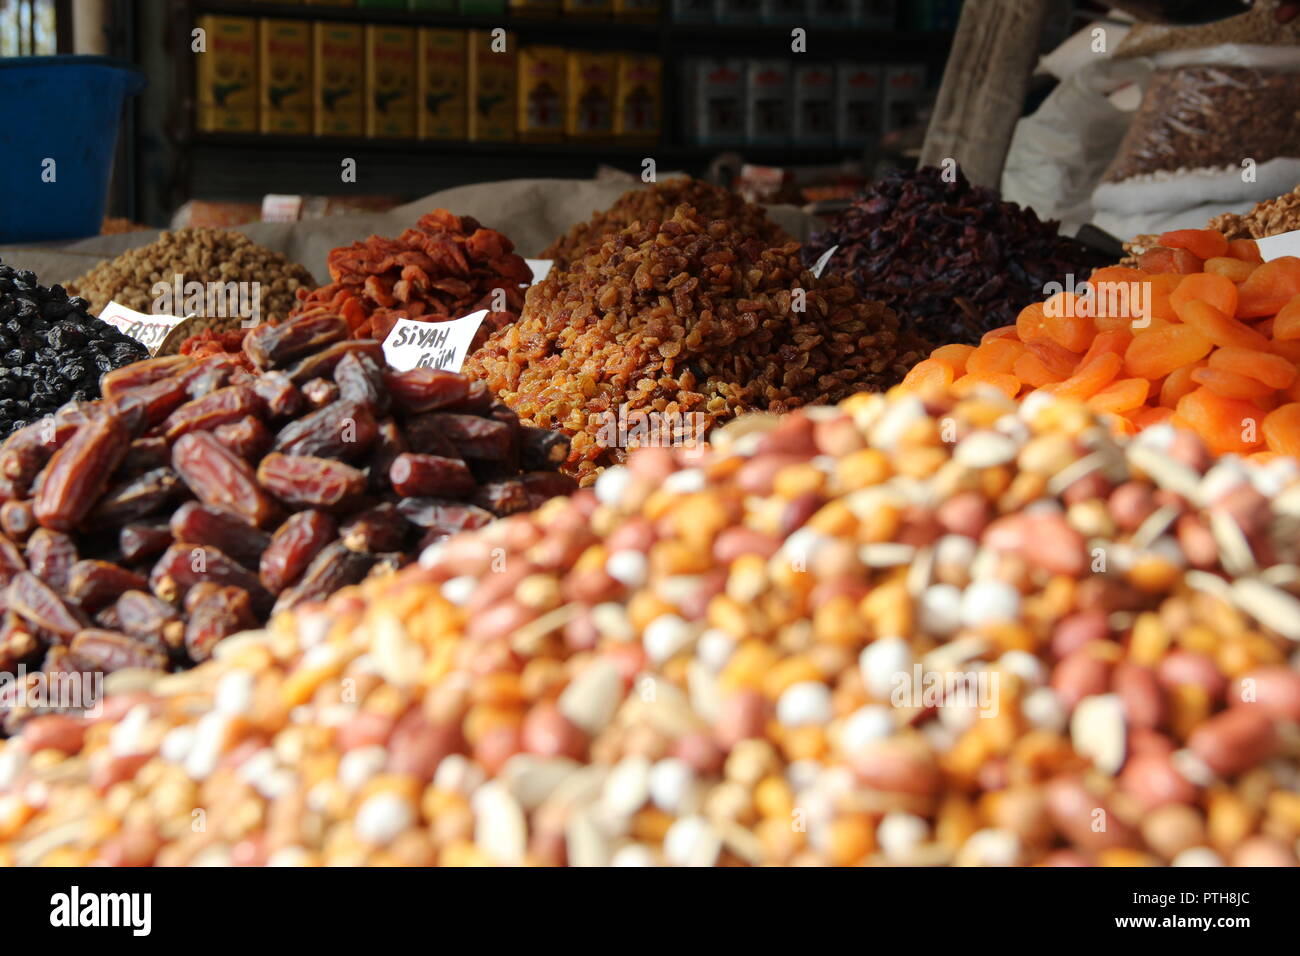 Street market in Turkey Stock Photo